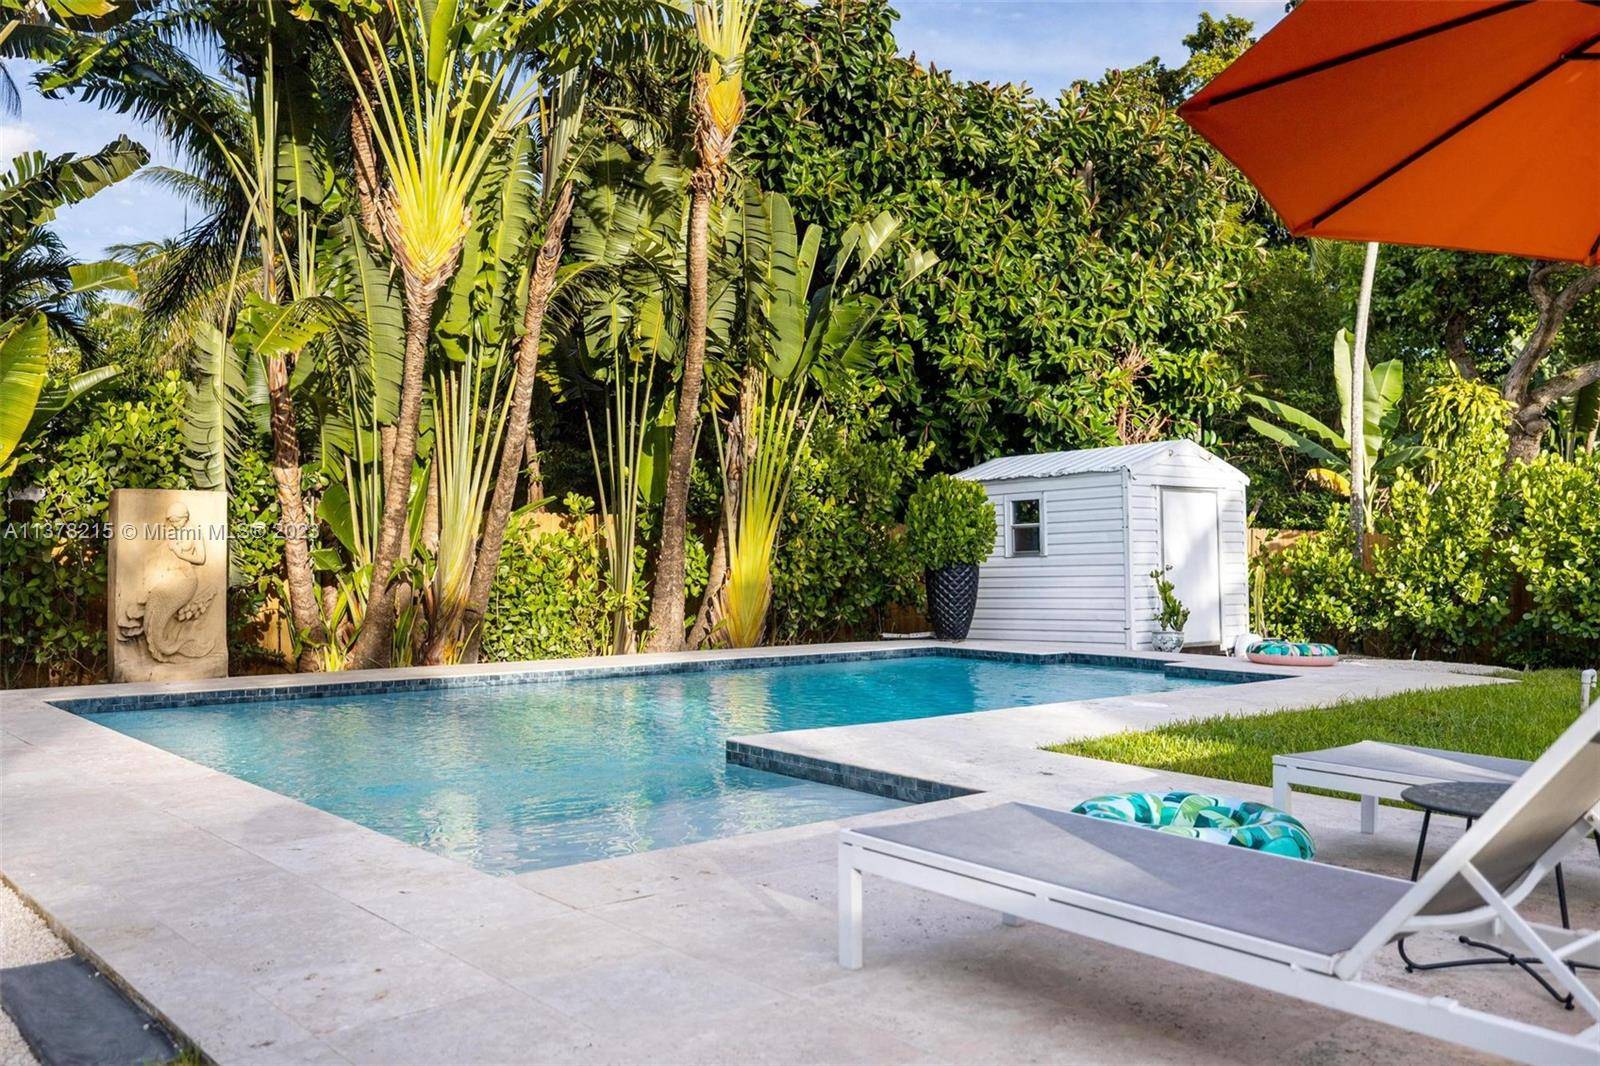 Tropical Dream Villa in Miami w Pool.